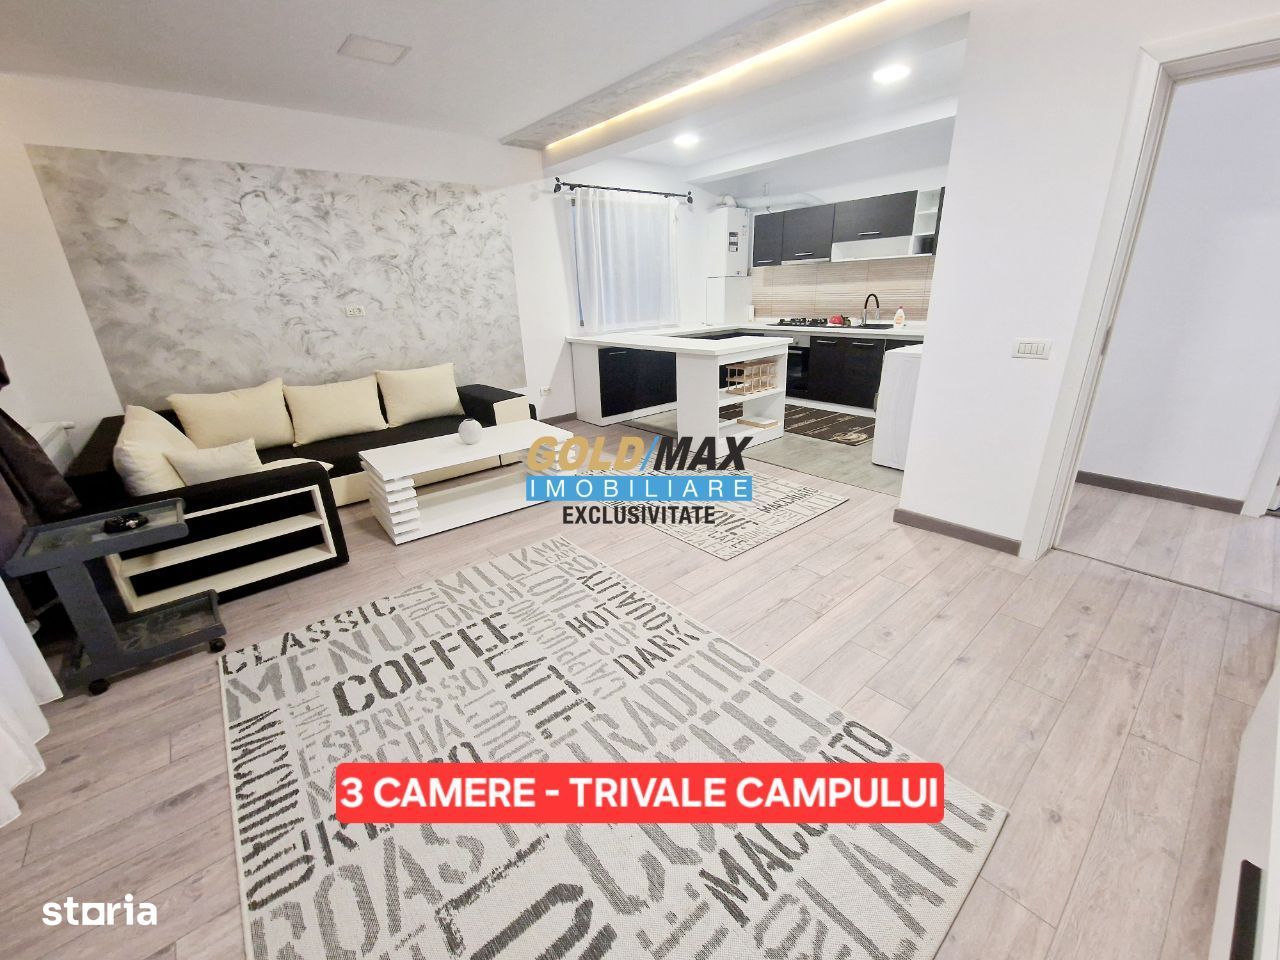 Apartament 3 camere | Trivale Campului | Exclusivitate goldmax.ro